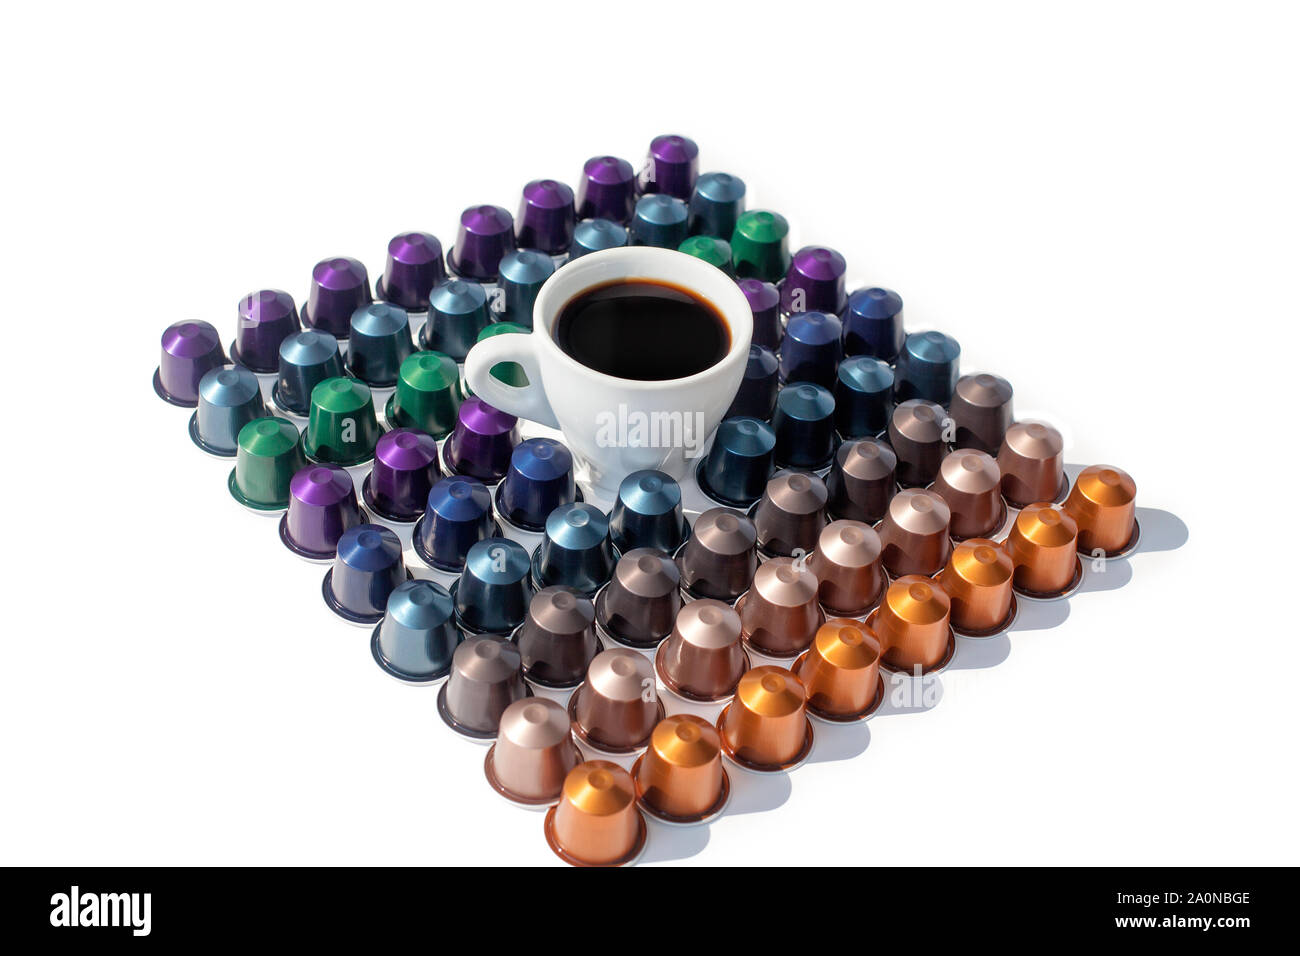 Kaffee Kapseln verschiedene Arten und Farben auf weißem Hintergrund Draufsicht in eckigen closeup und Tasse Kaffee zurück, isoliert Stockfoto